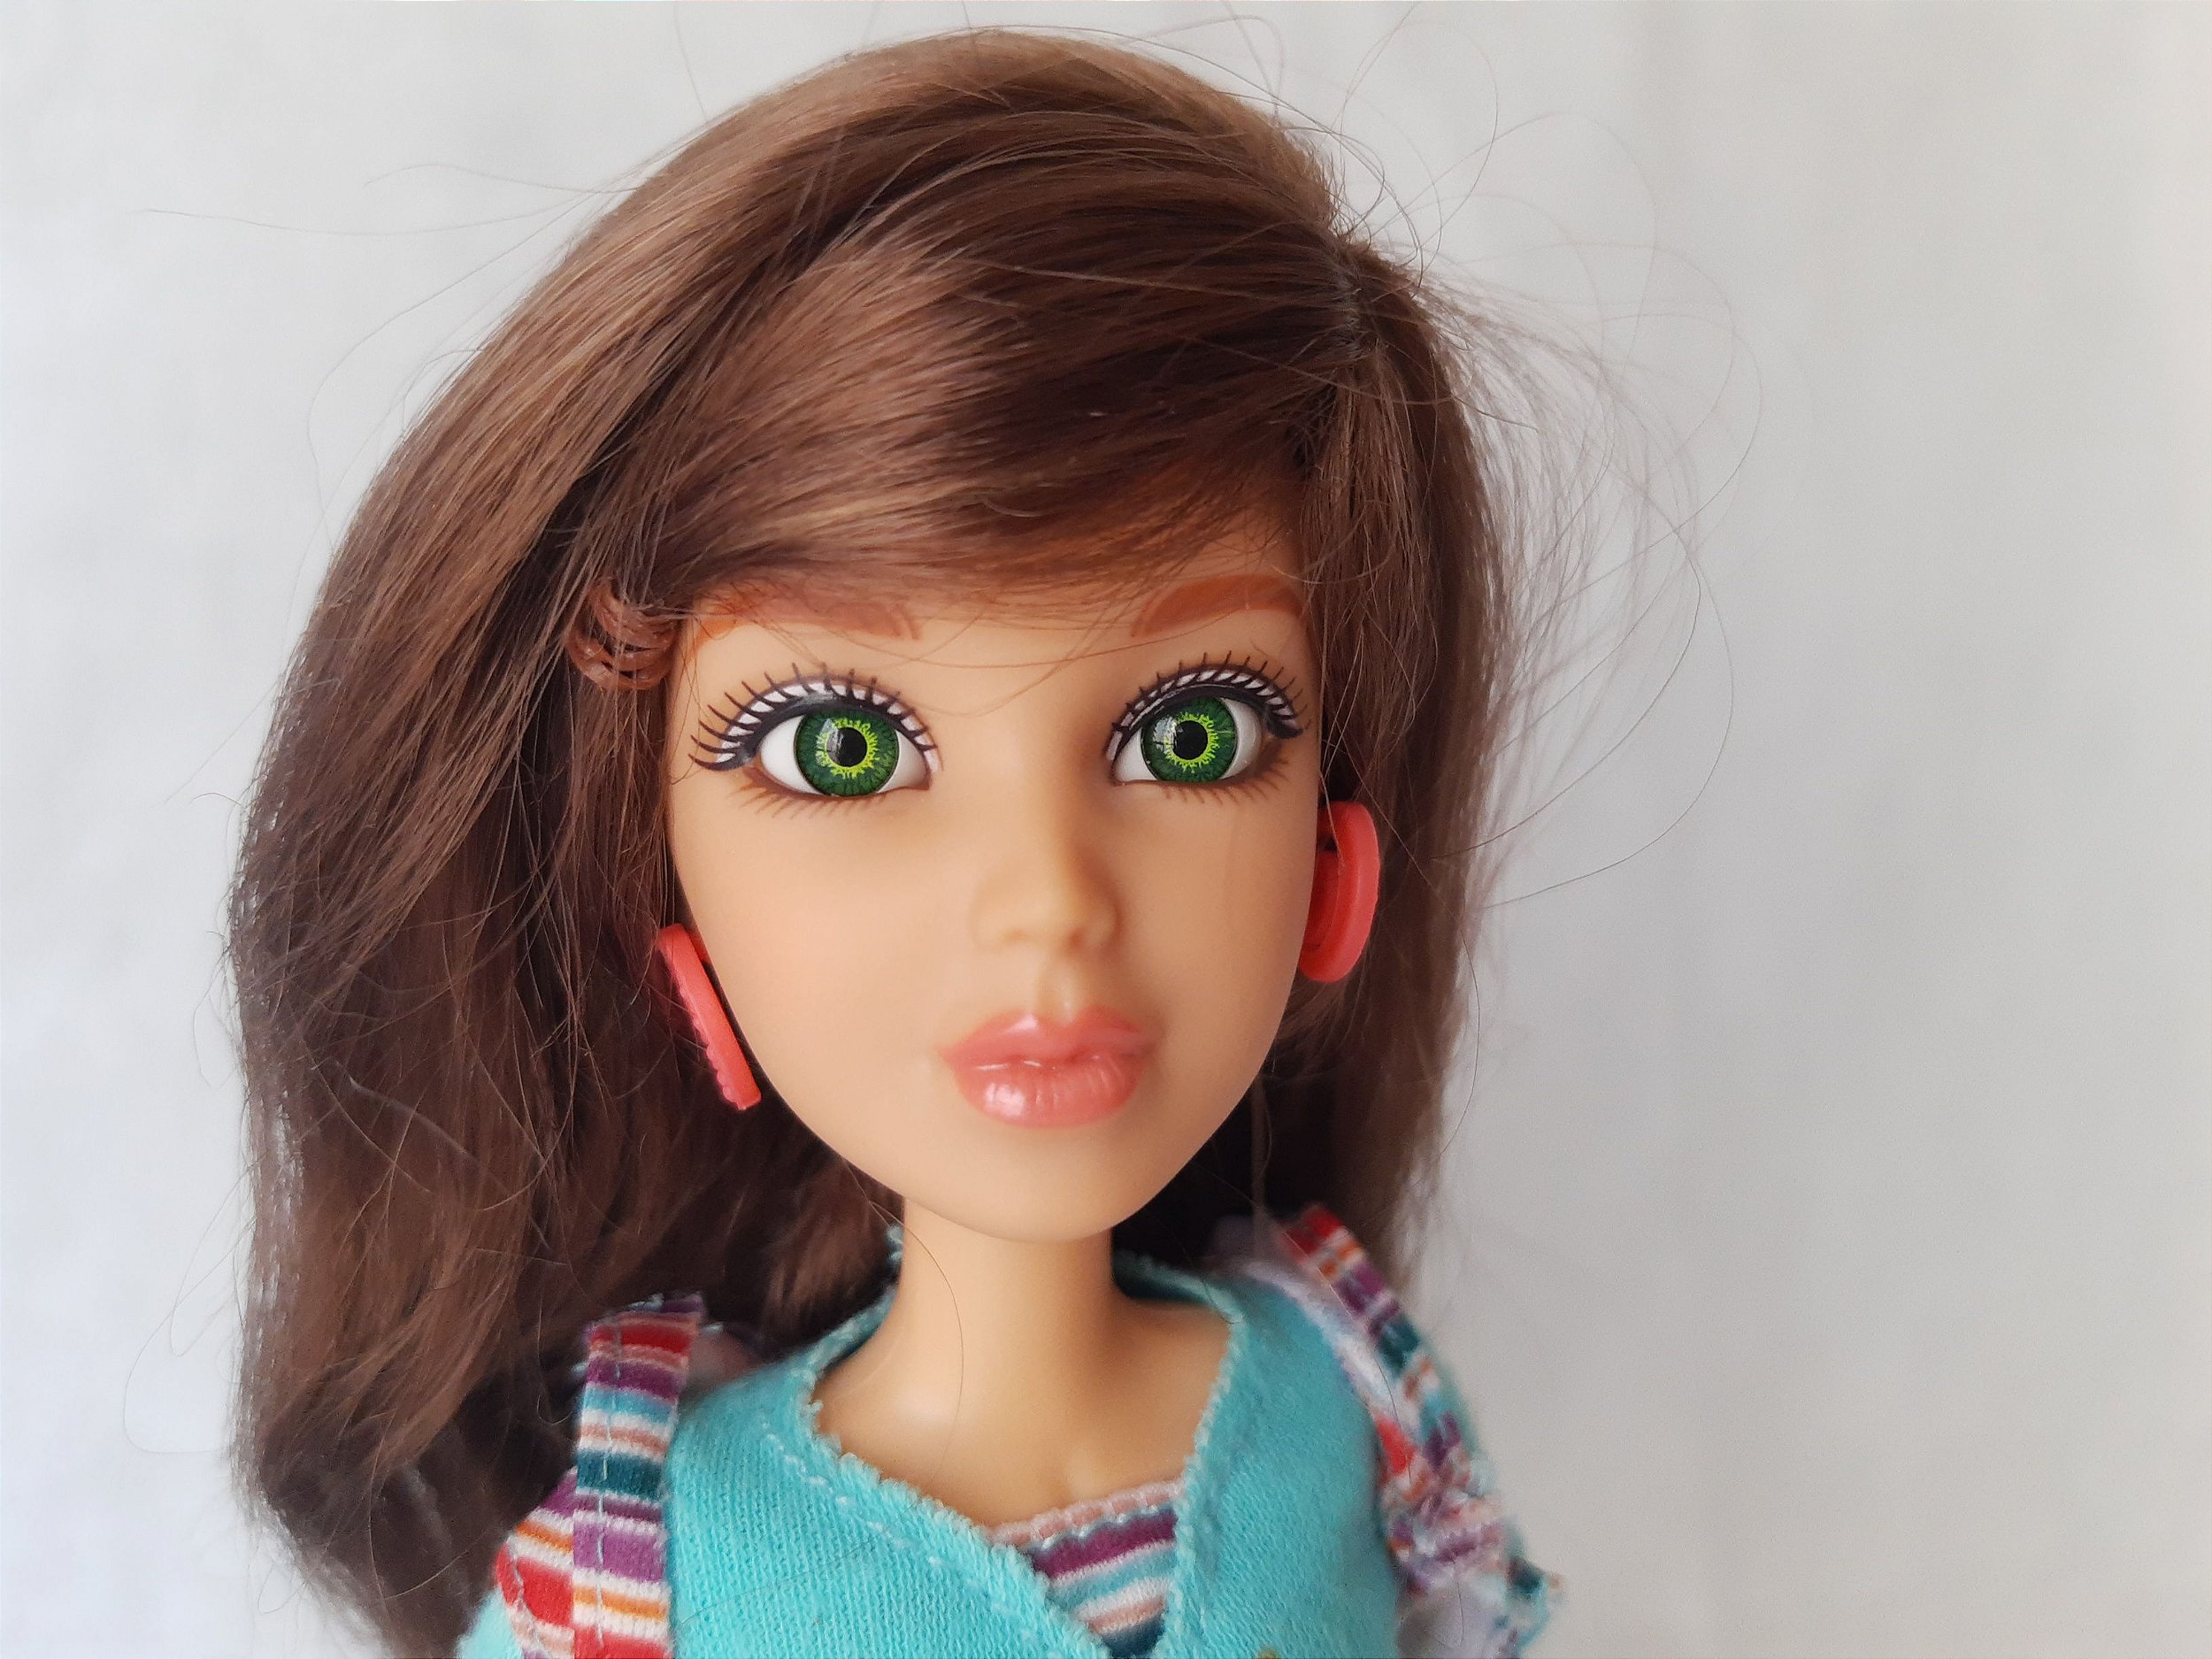 SINCA RS: Olhos de boneca!